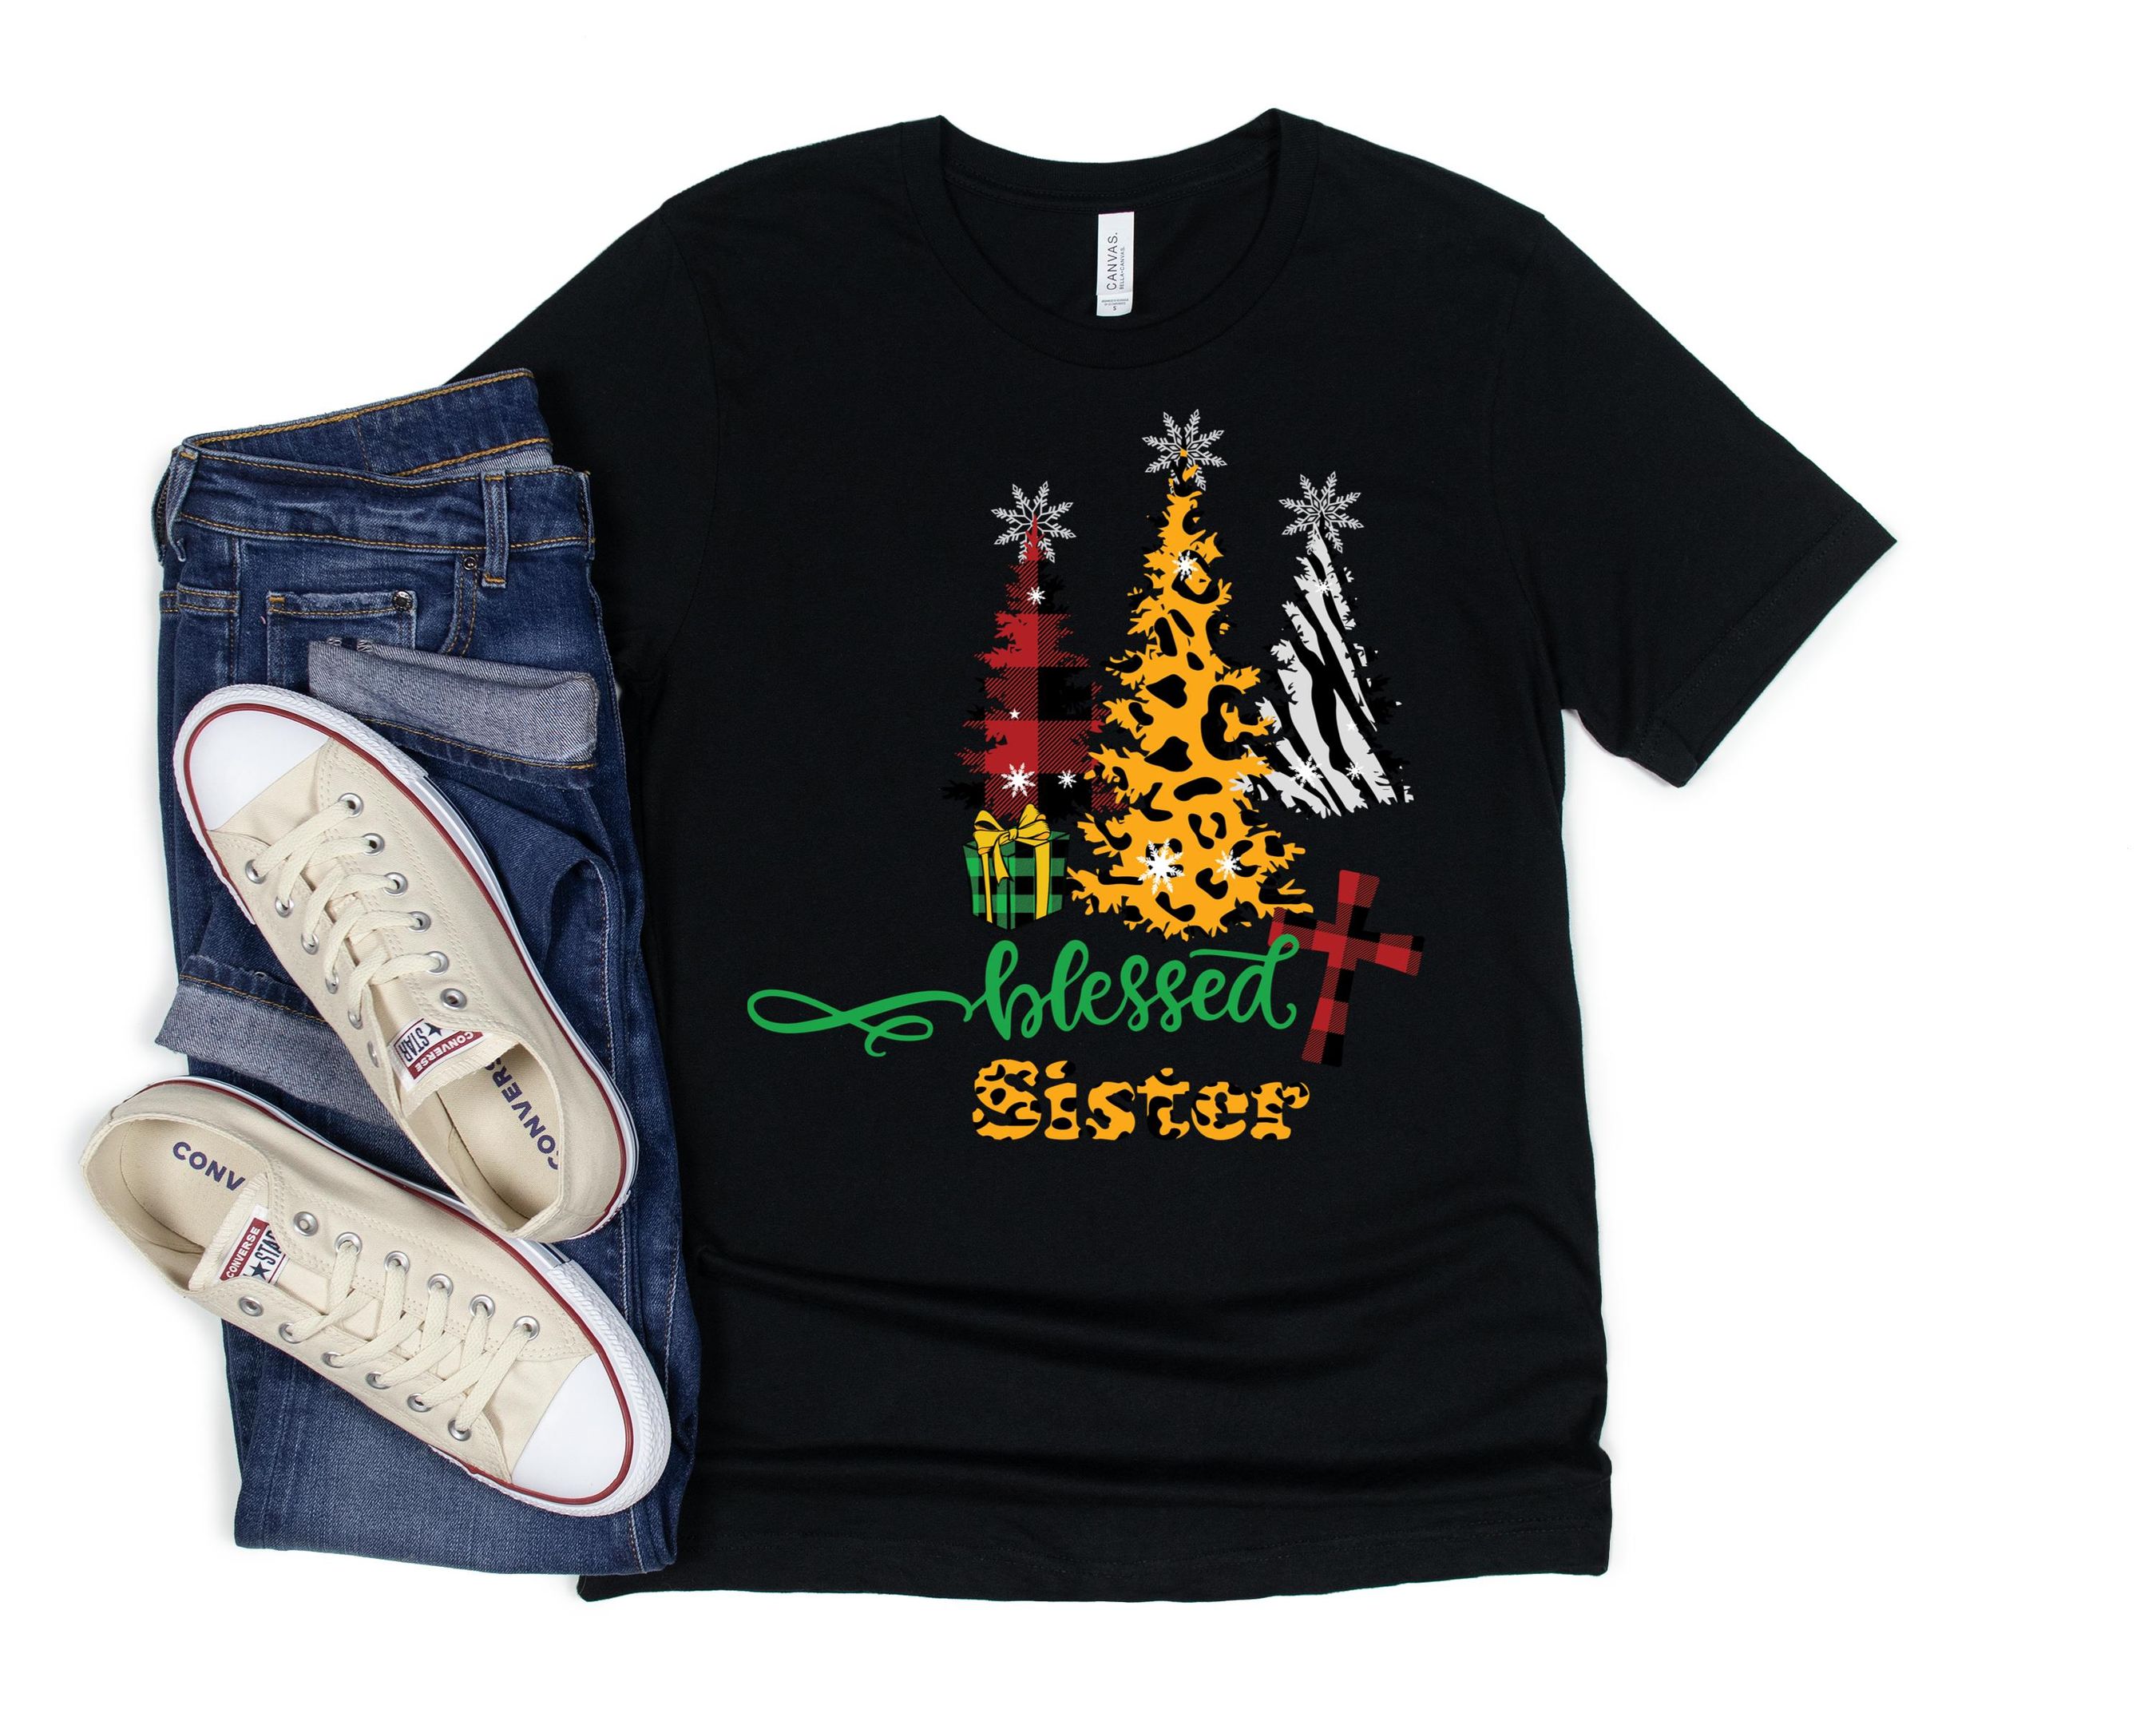 Blessed Sister Shirt, Merry Christmas Shirt,  Christmas Funny Shirt, Merry Christmas Wishes, Christmas Gift For Family